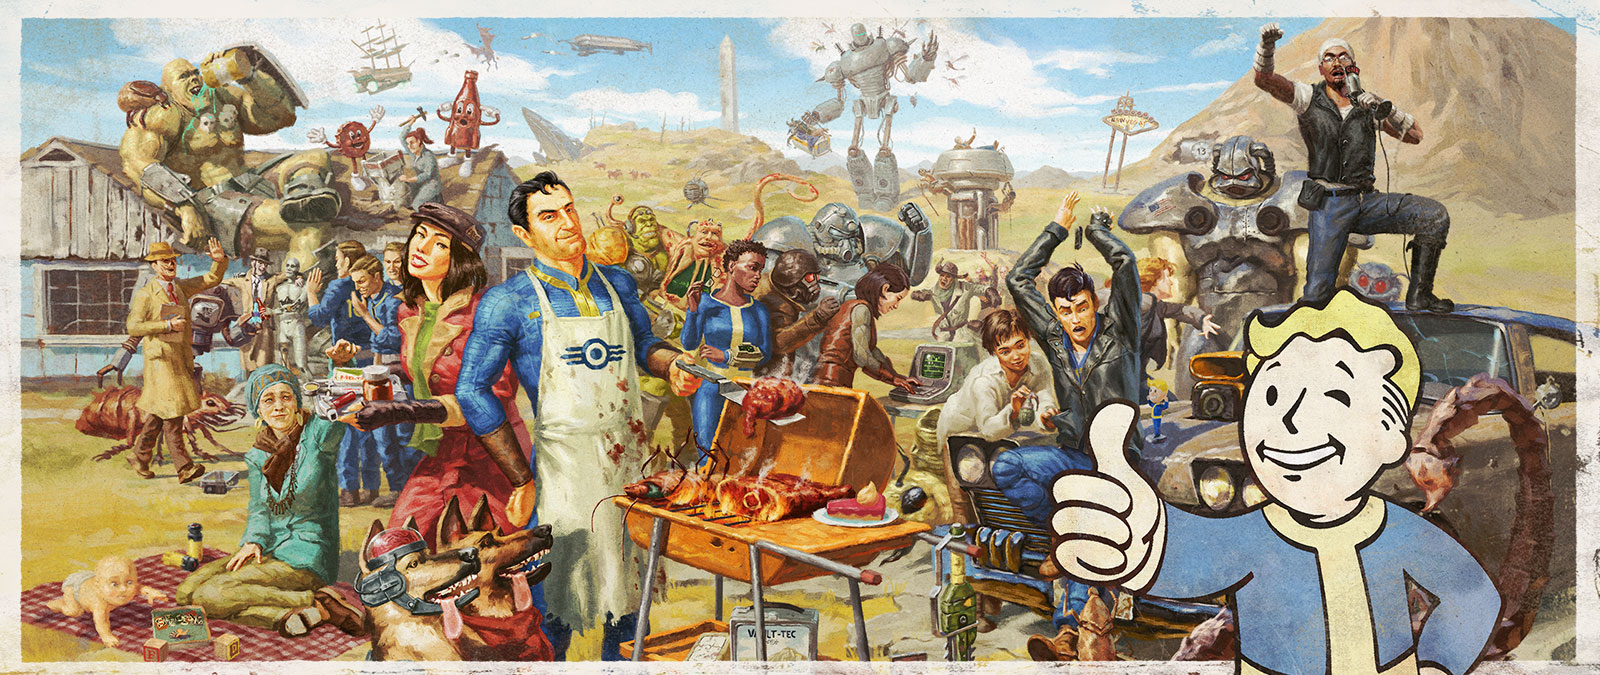 Diversas personagens da série Fallout reunidas para um barbecue de família.